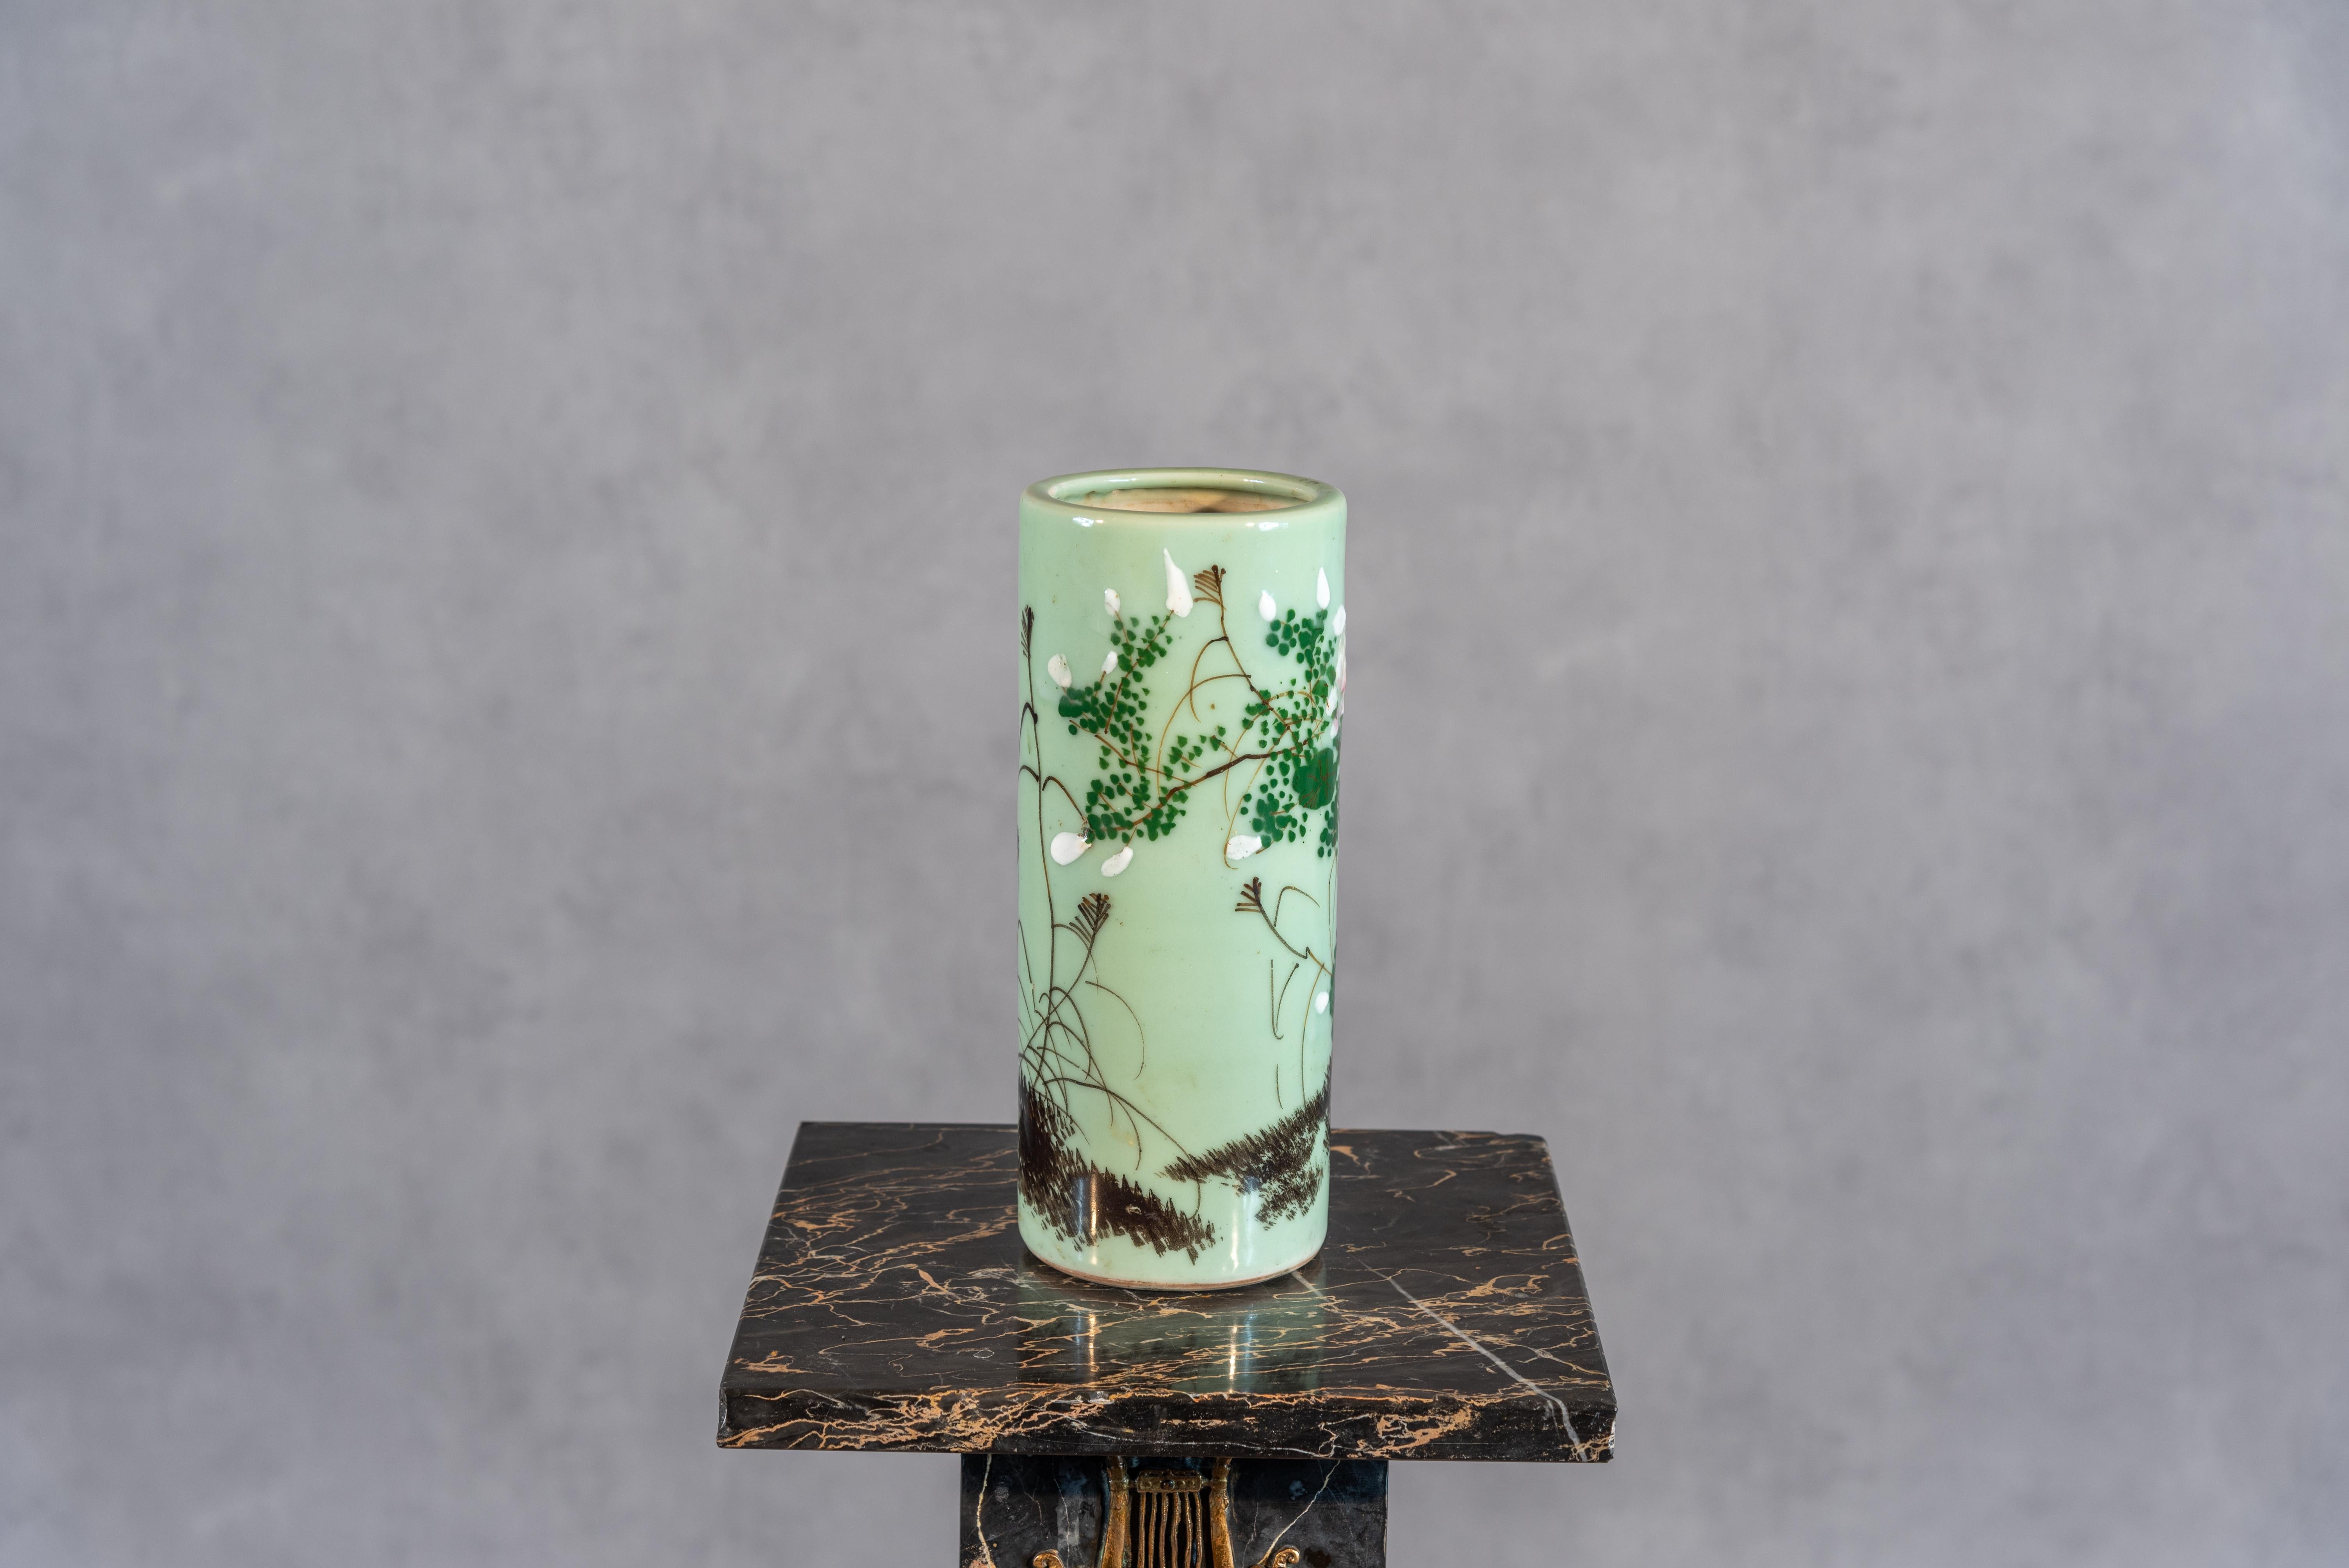 Ce grand vase en céladon du XXe siècle témoigne de l'allure intemporelle de l'artisanat français. Le vase, qui se tient gracieusement, est orné d'un délicat décor floral, mettant en valeur la fusion de l'art inspiré de la nature et du design exquis.